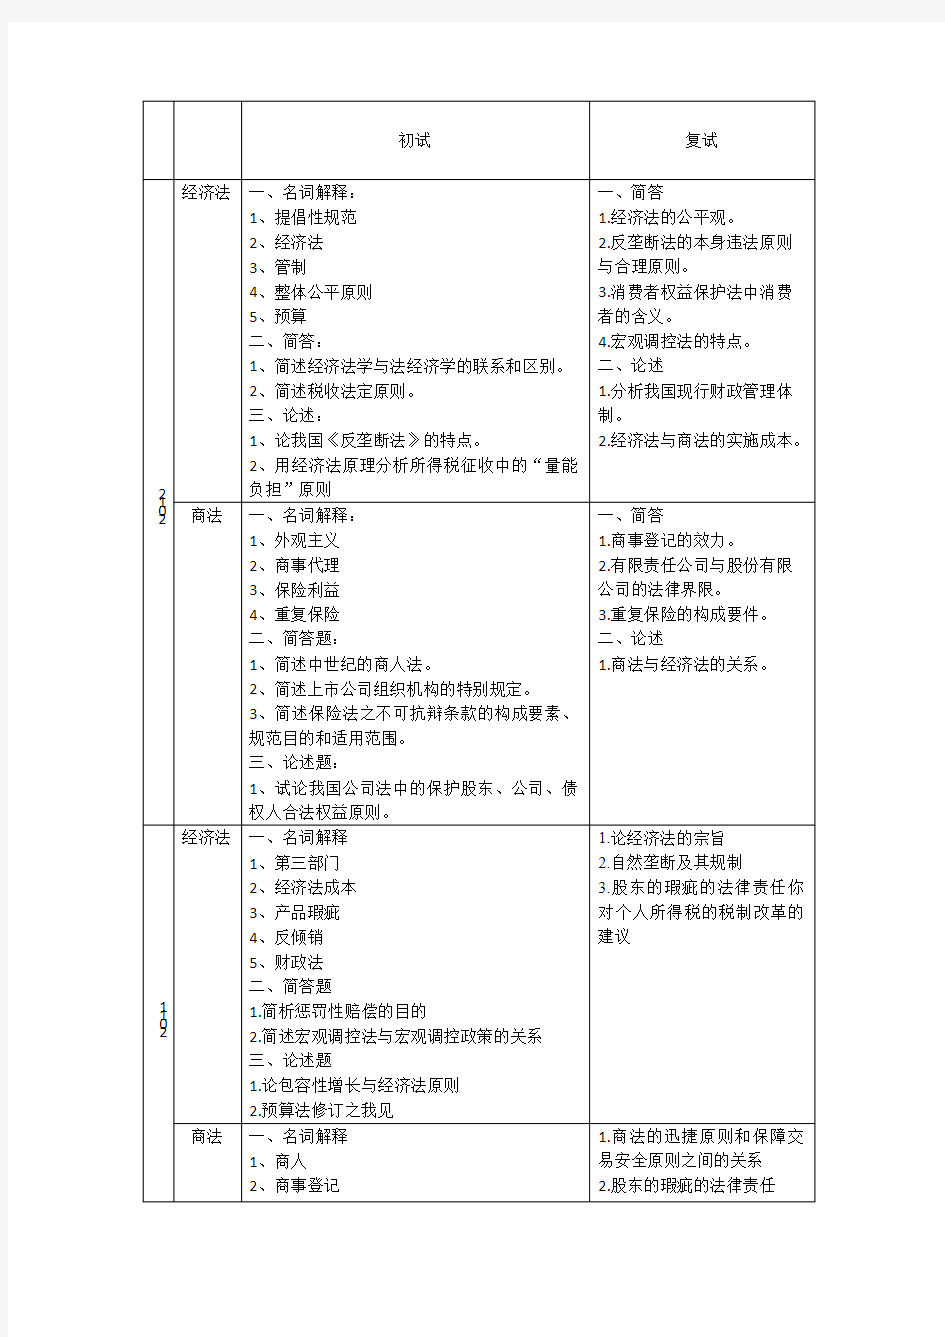 中南财经政法大学 考研 经济法 历年真题(初试、复试)